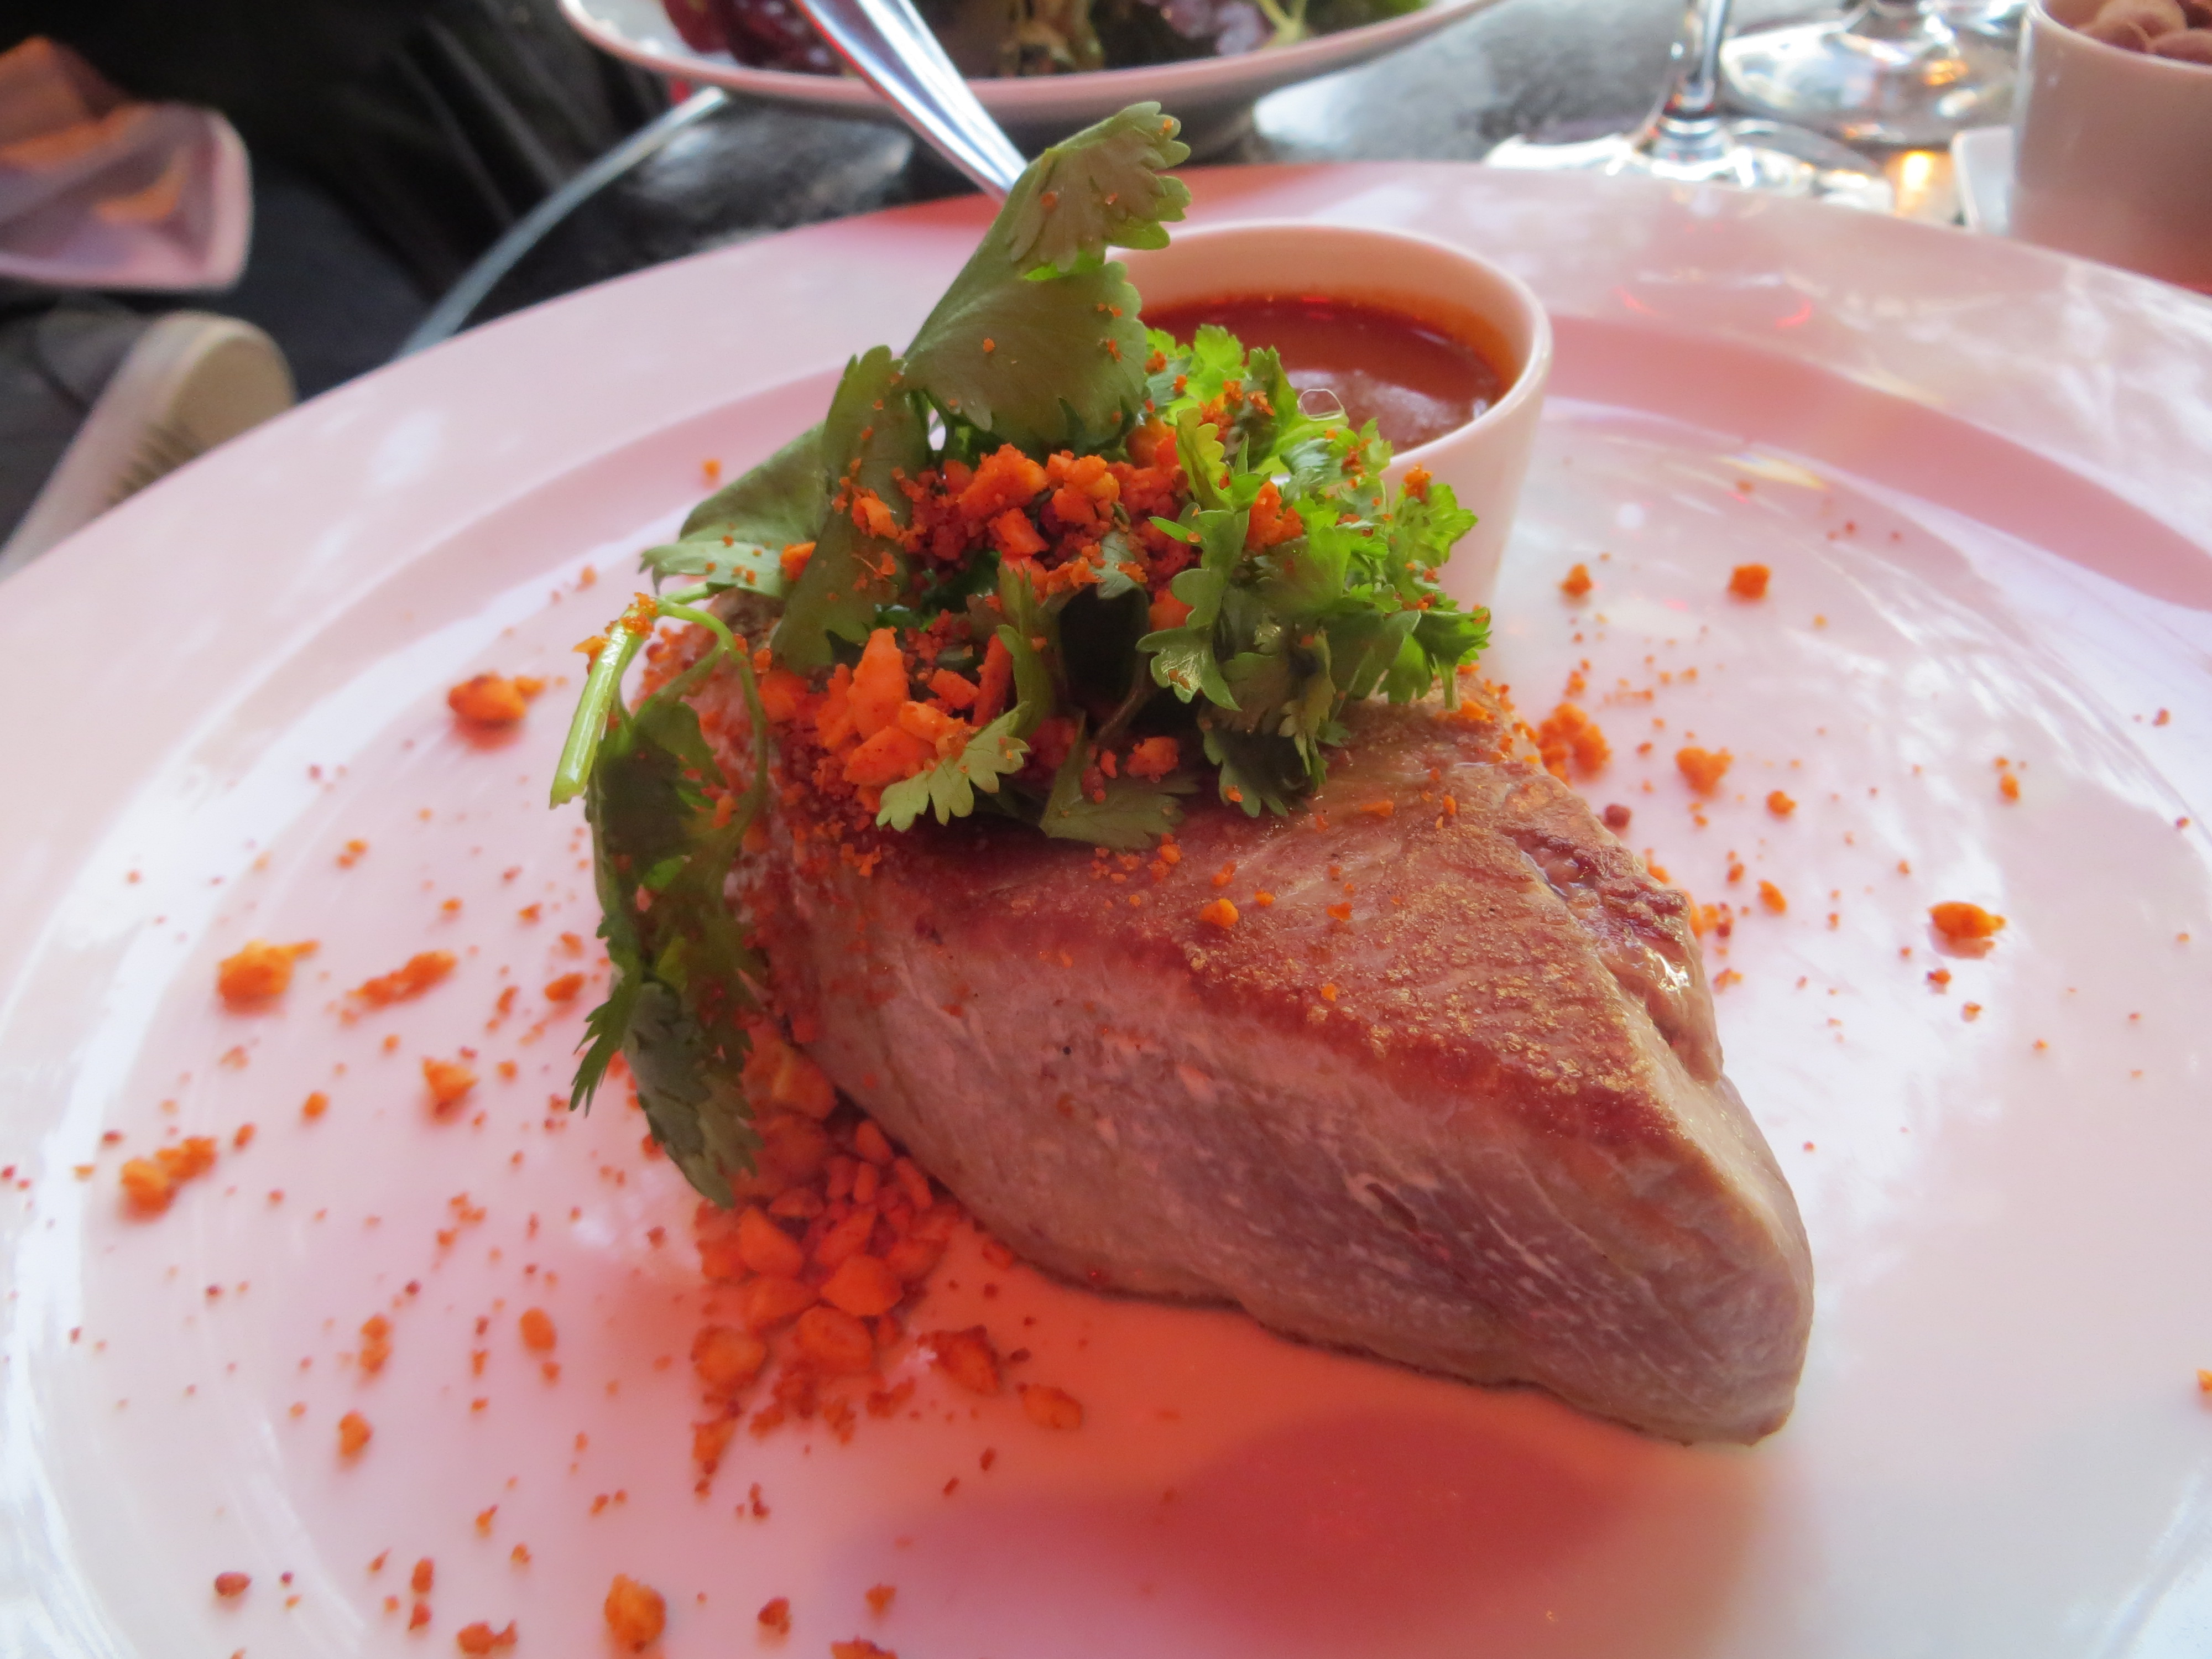 Tuna at Le Coq, A costes restaurant at Trocadero in Paris